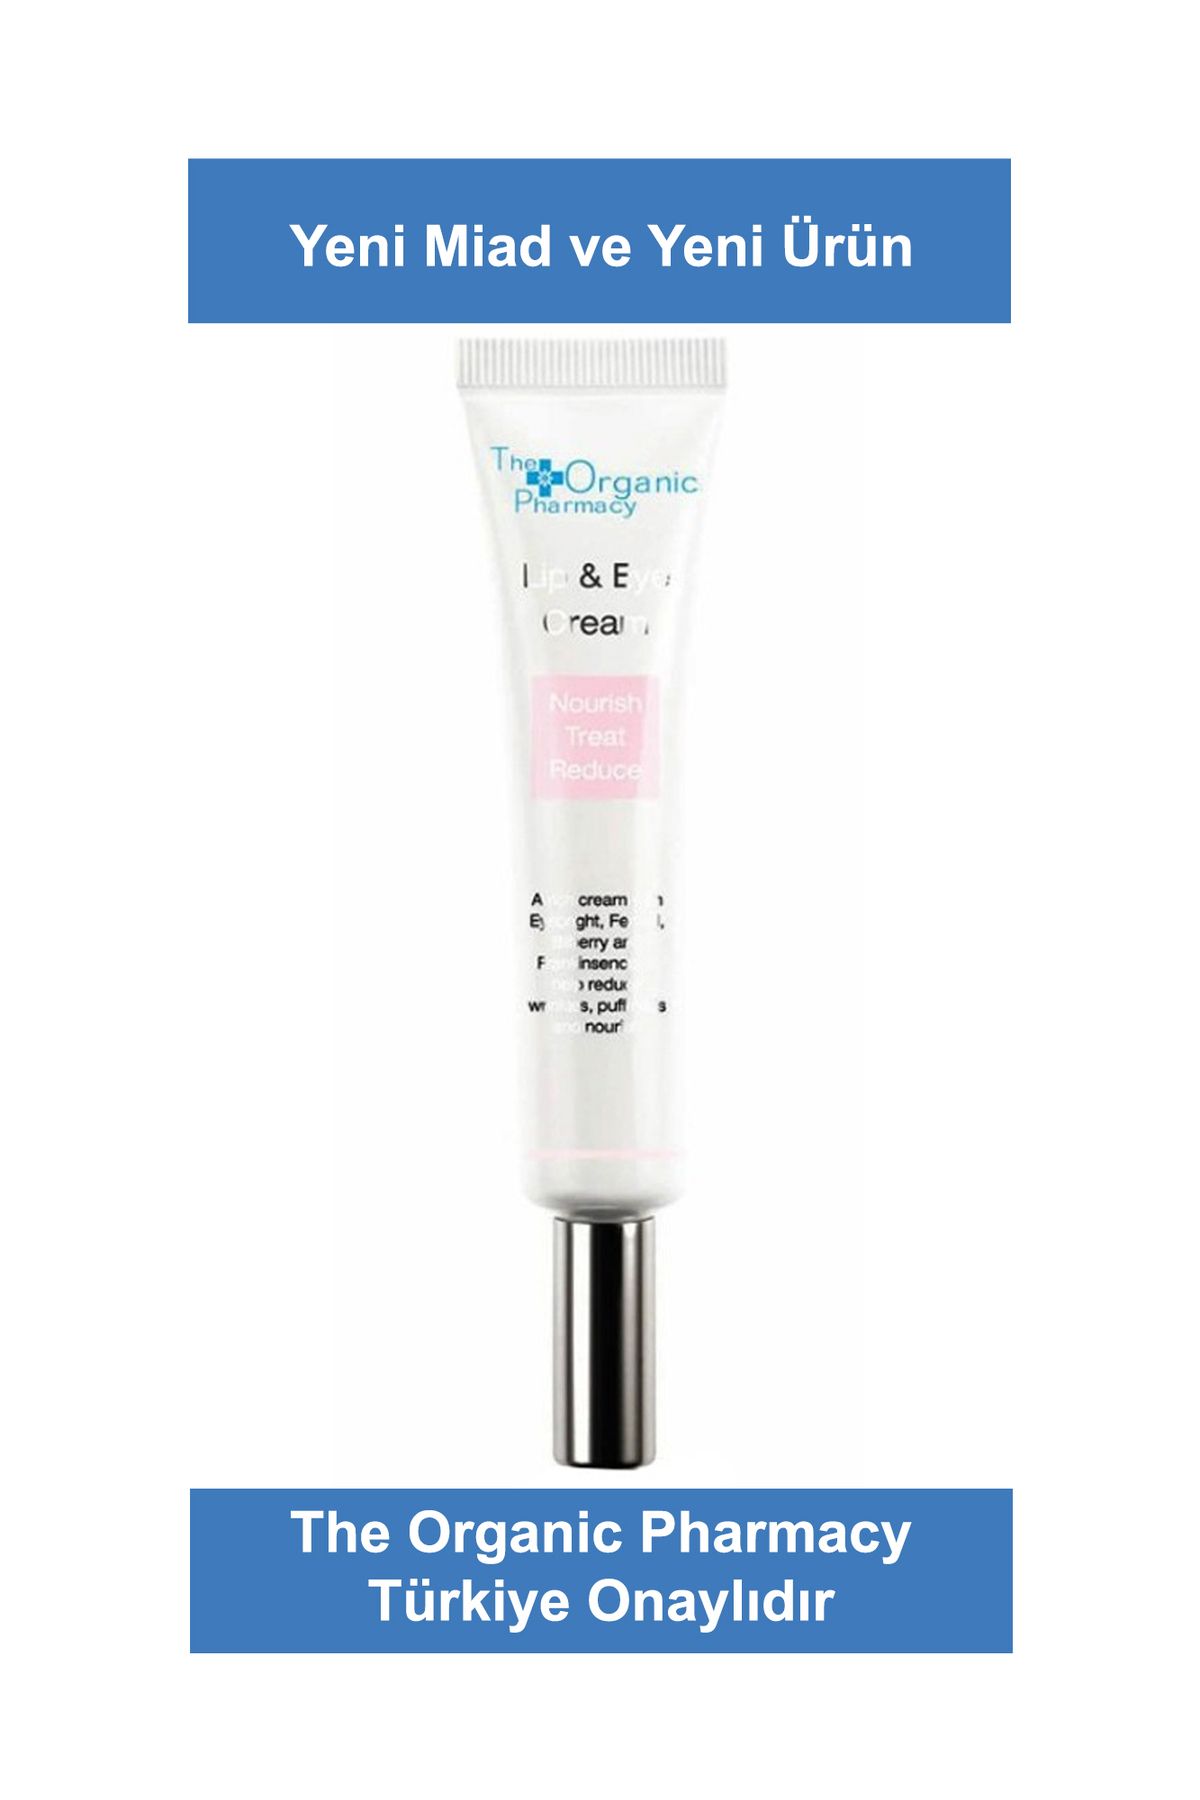 The Organic Pharmacy Lip & Eye Cream 10 ml ( Yeni Ürün Uzun Miad )